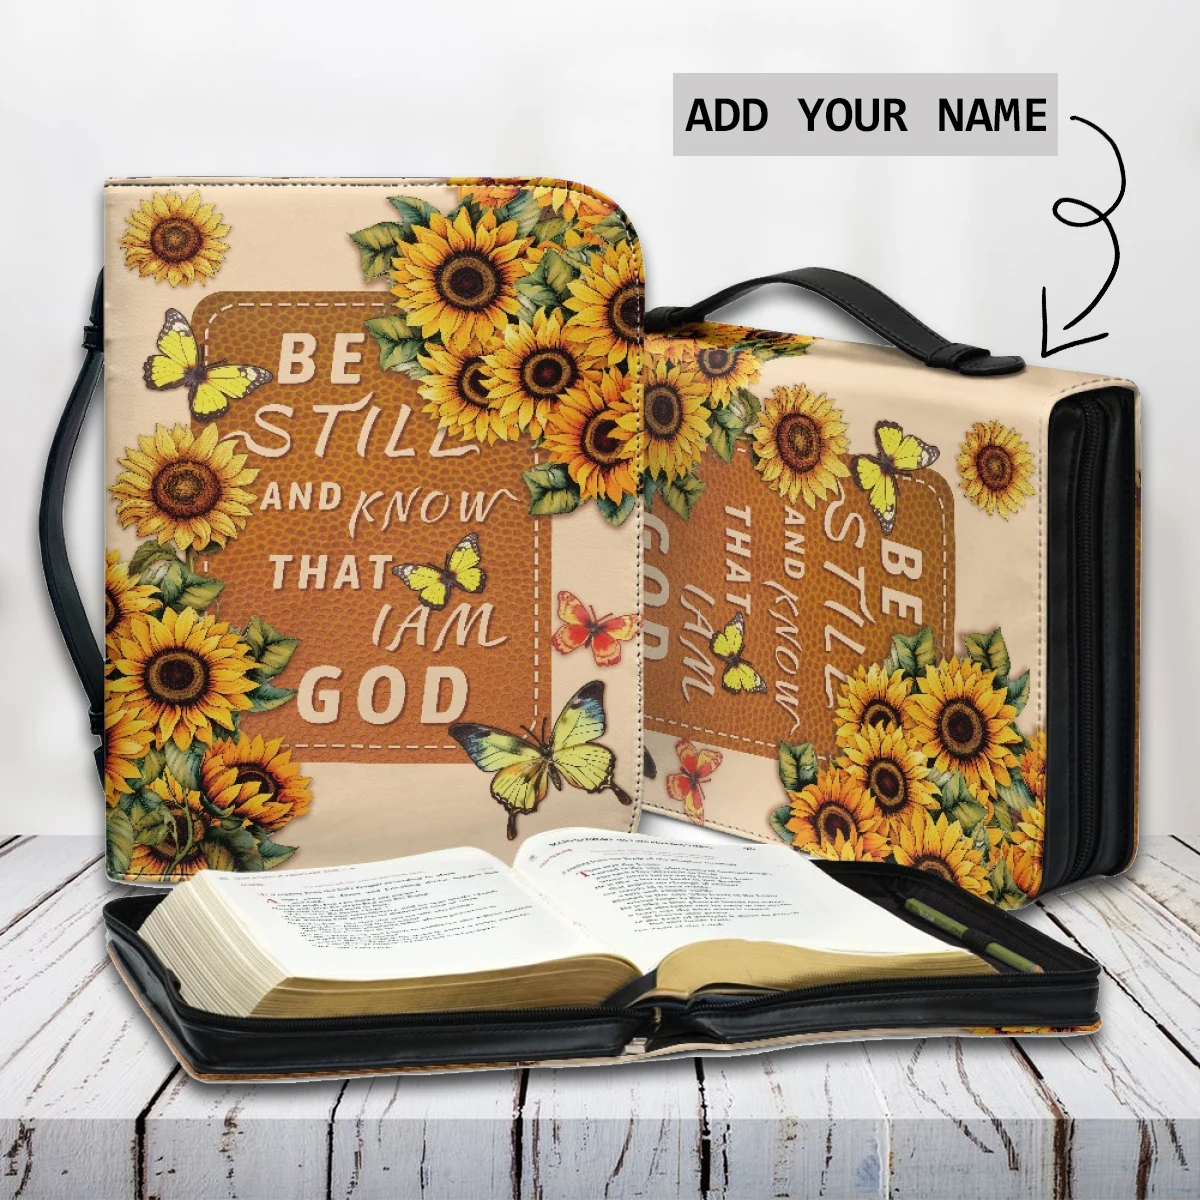 

Будьте все еще и знайте, что я Бог, Bibel Hymn, сумка для хранения с изображением Библии, Подсолнухи, бабочки, дизайн на заказ, Библия, обложка чехол 2023